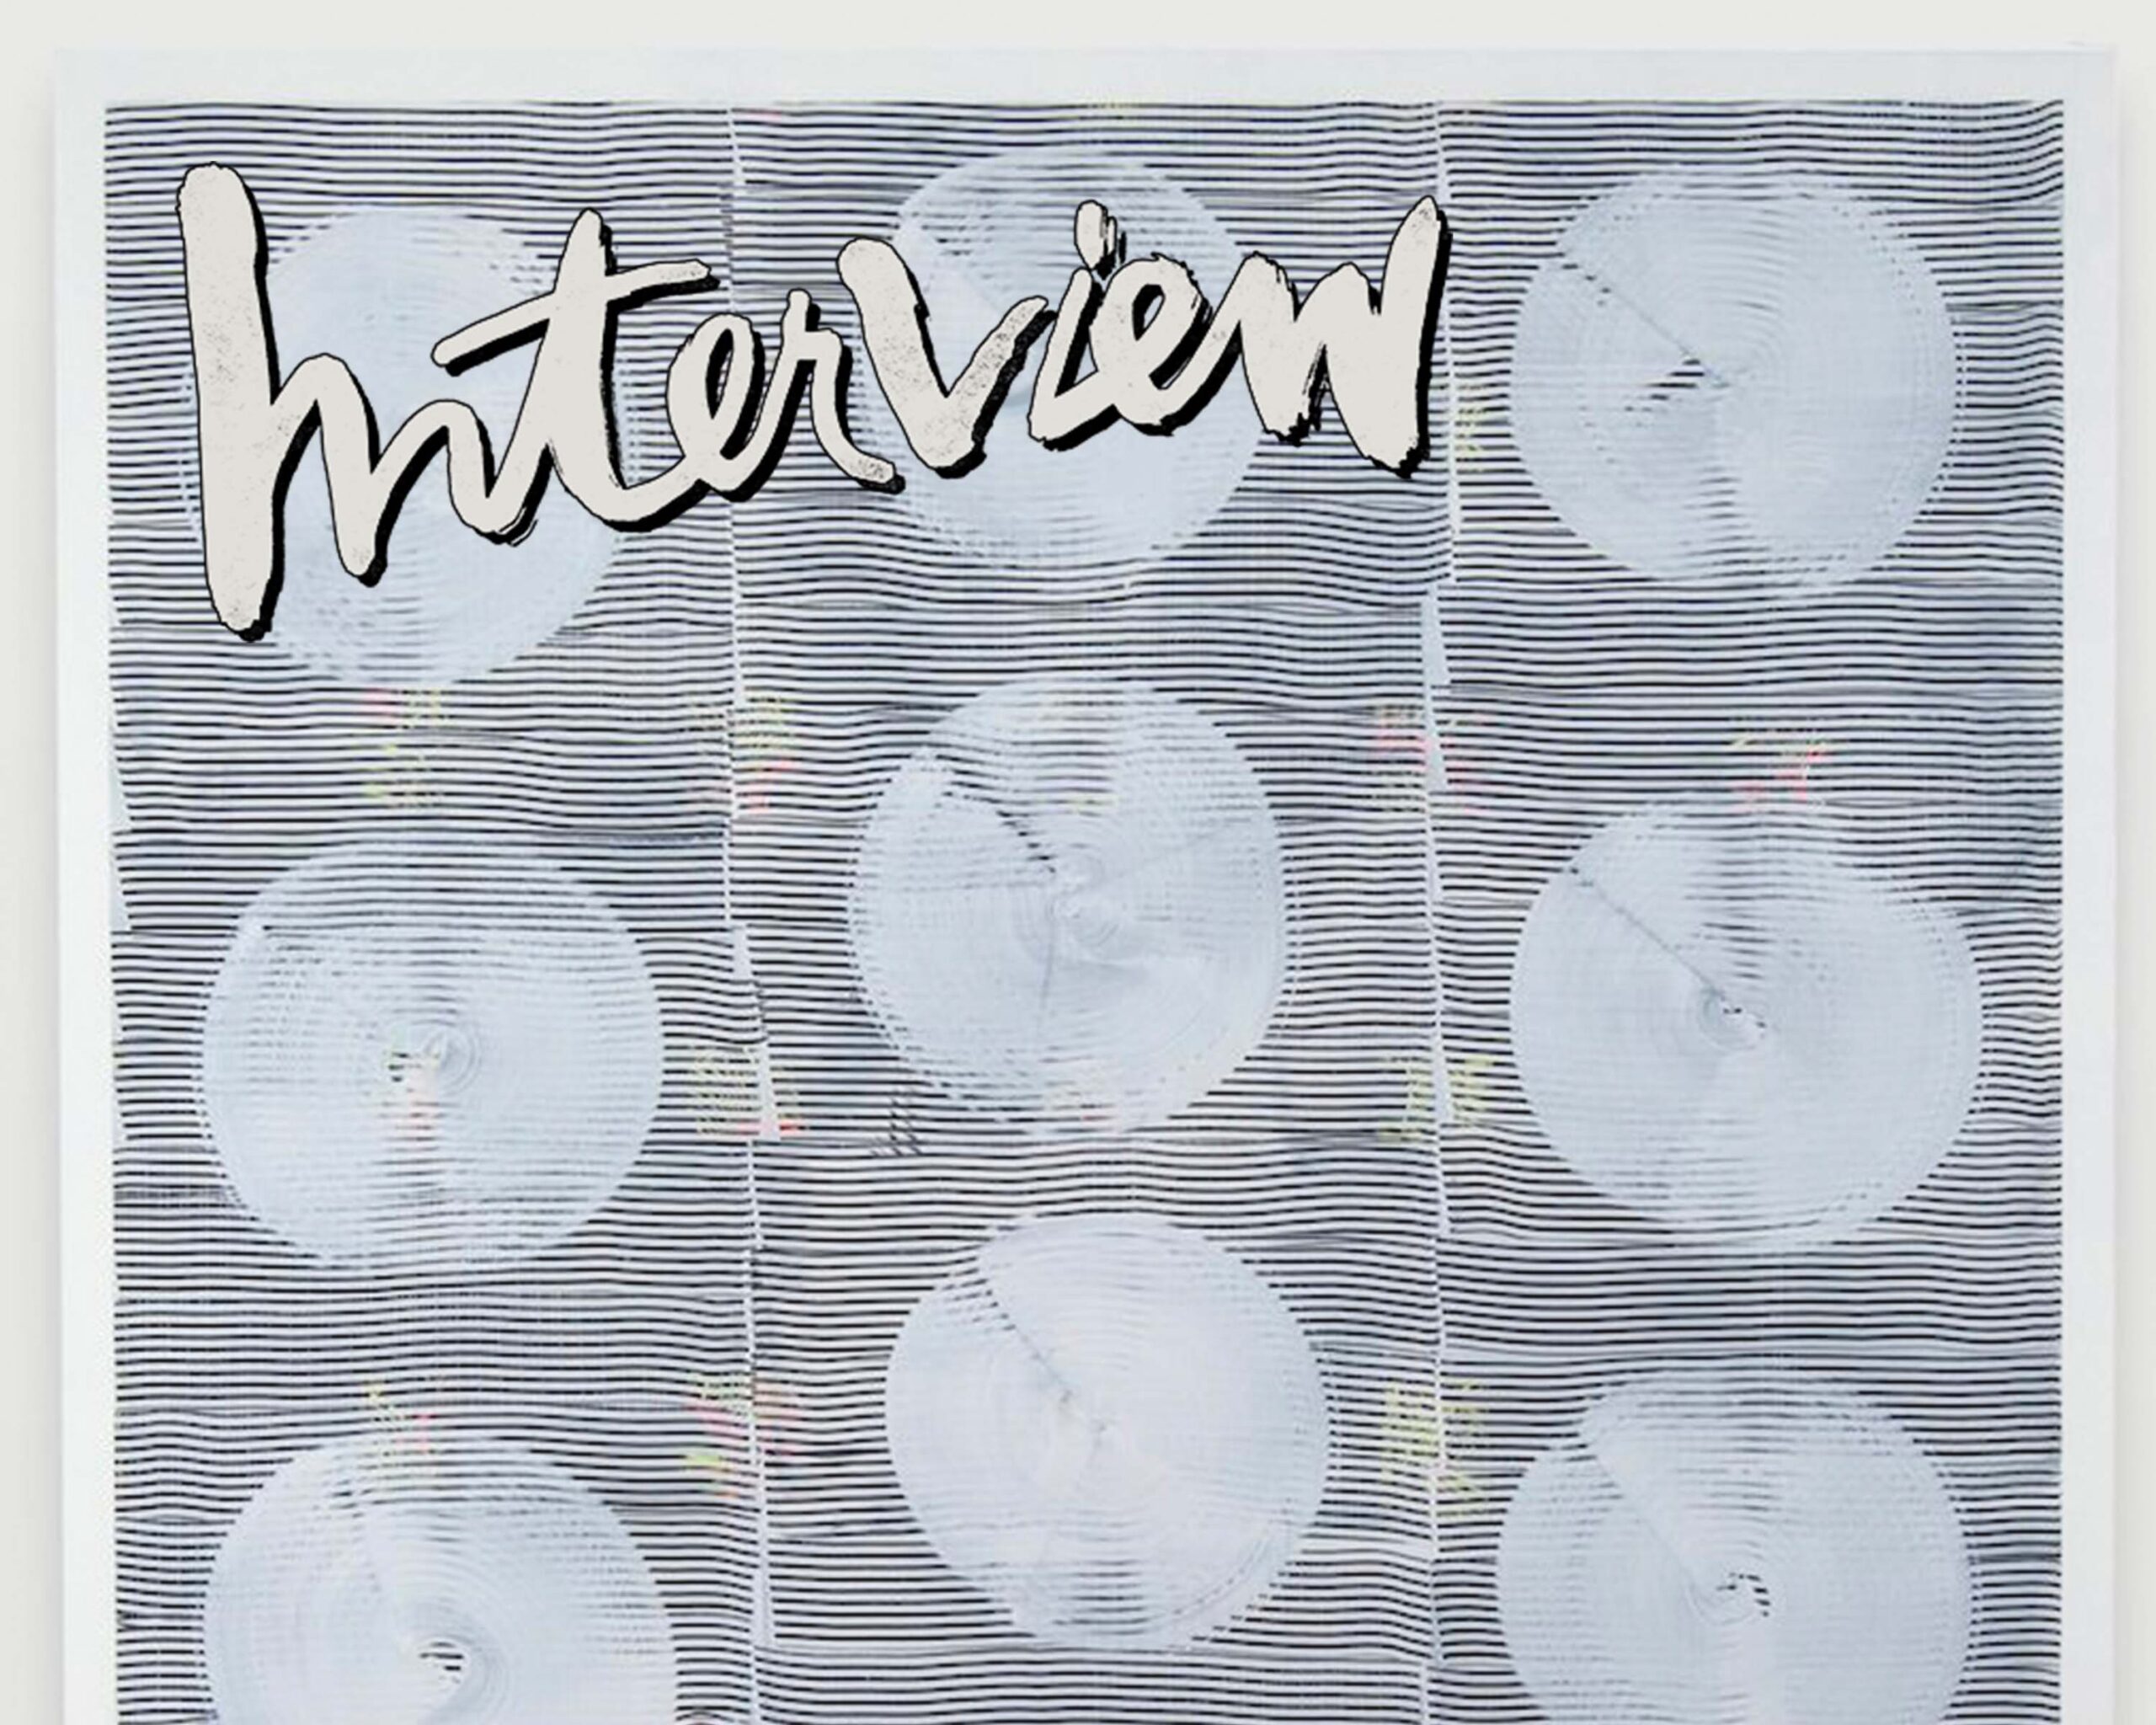 Interview Magazine, 2015 | Julia Dault's Mark